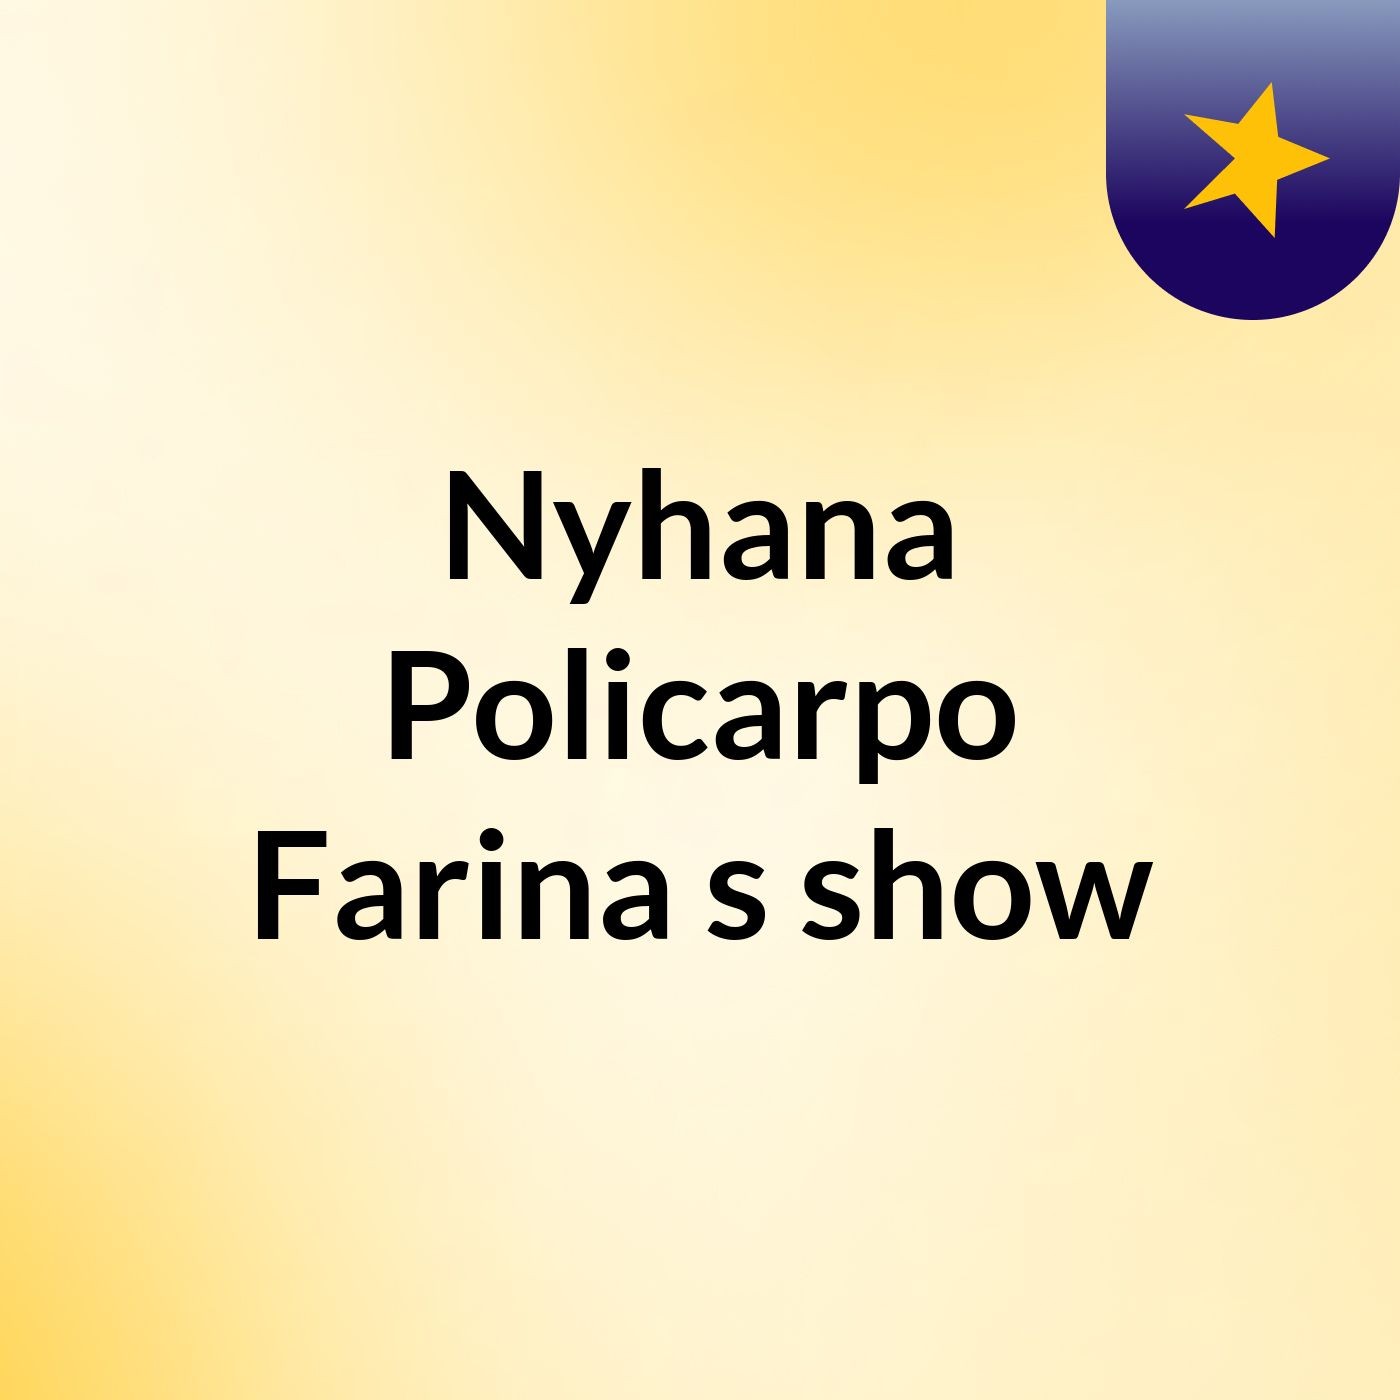 Nyhana Policarpo Farina's show